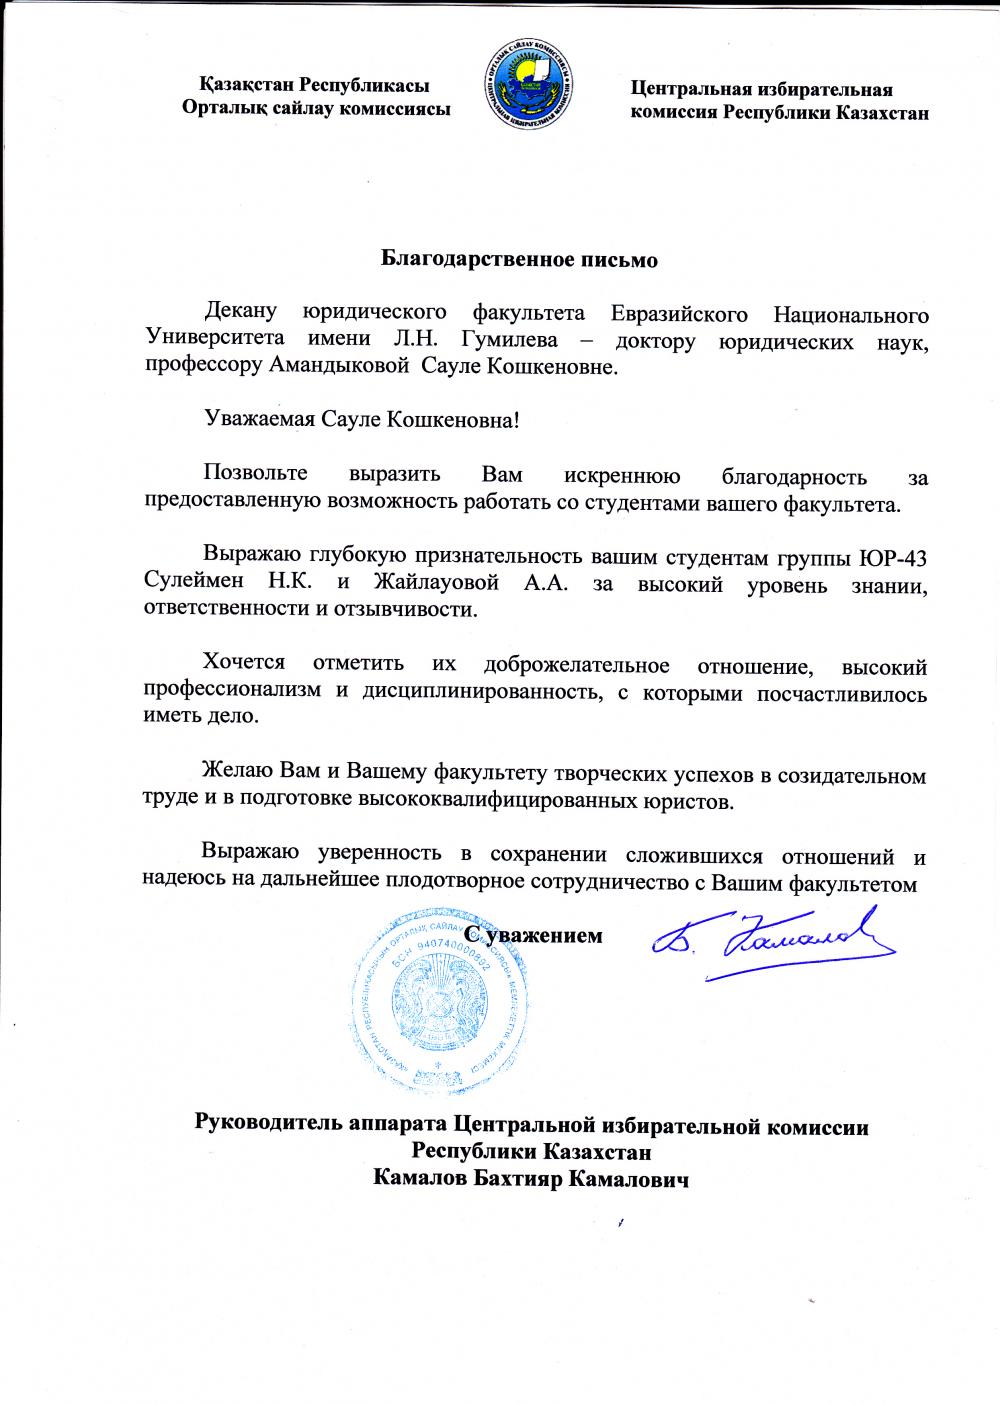 Благодарственное письмо от руководителя аппарата Центральной избирательной комиссии Республики Казахстан декану юридического факультета